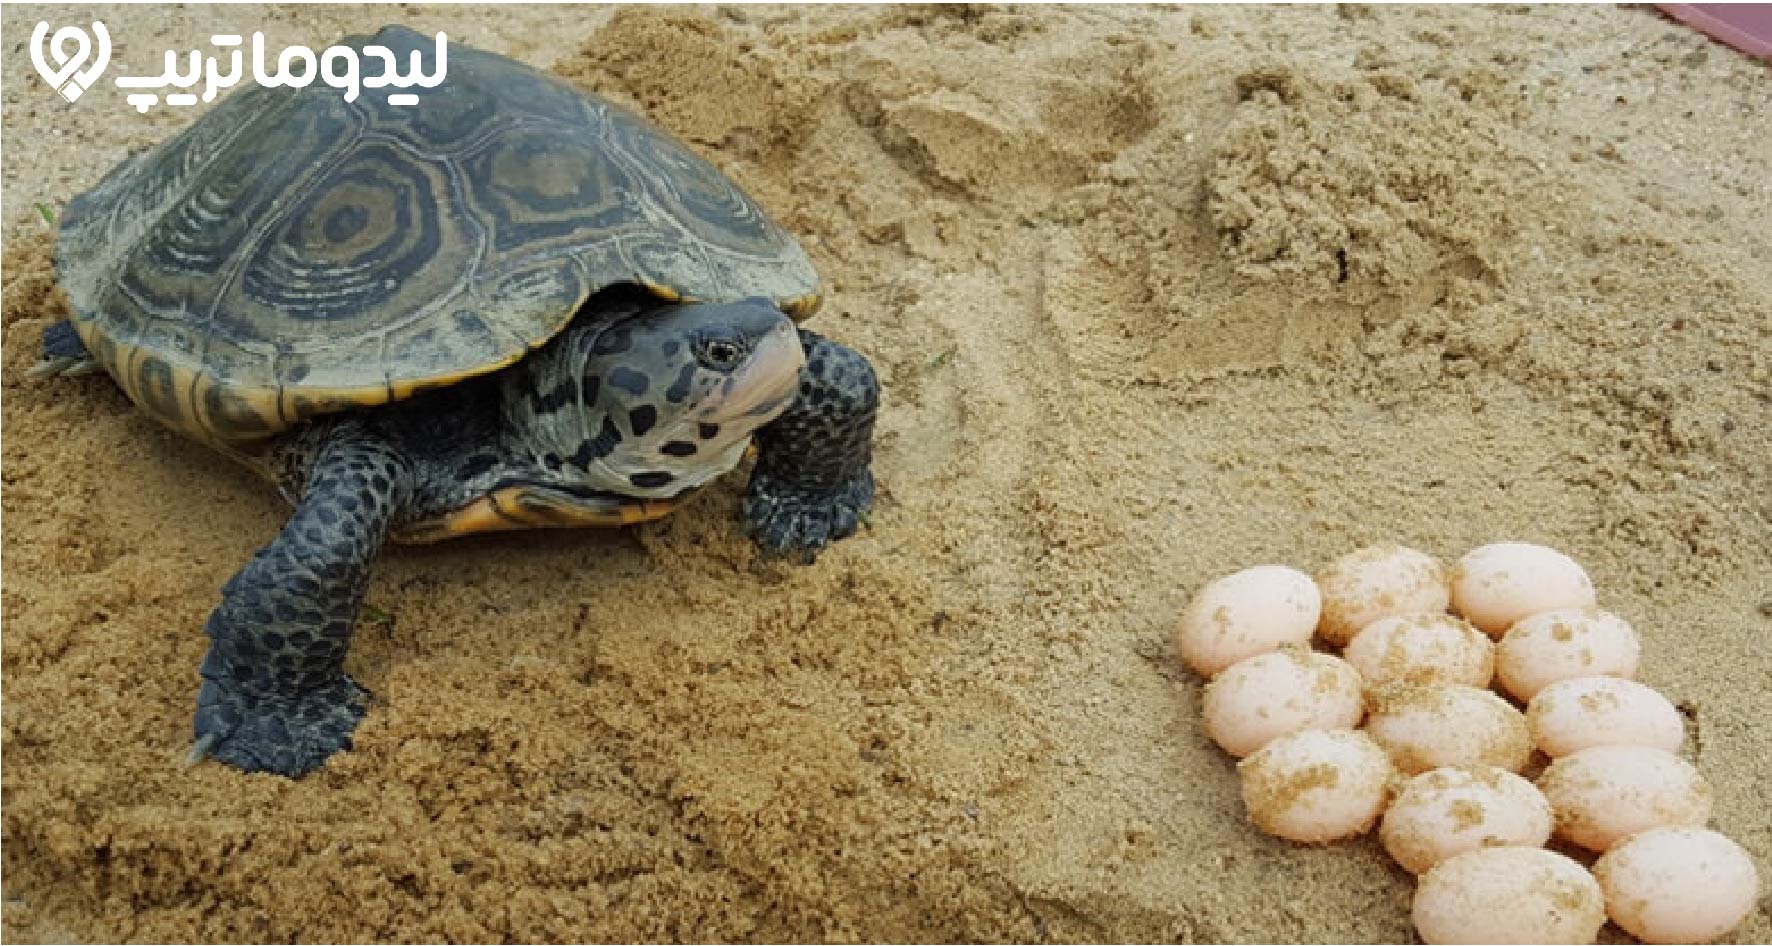 لاکپشت های هندورابی